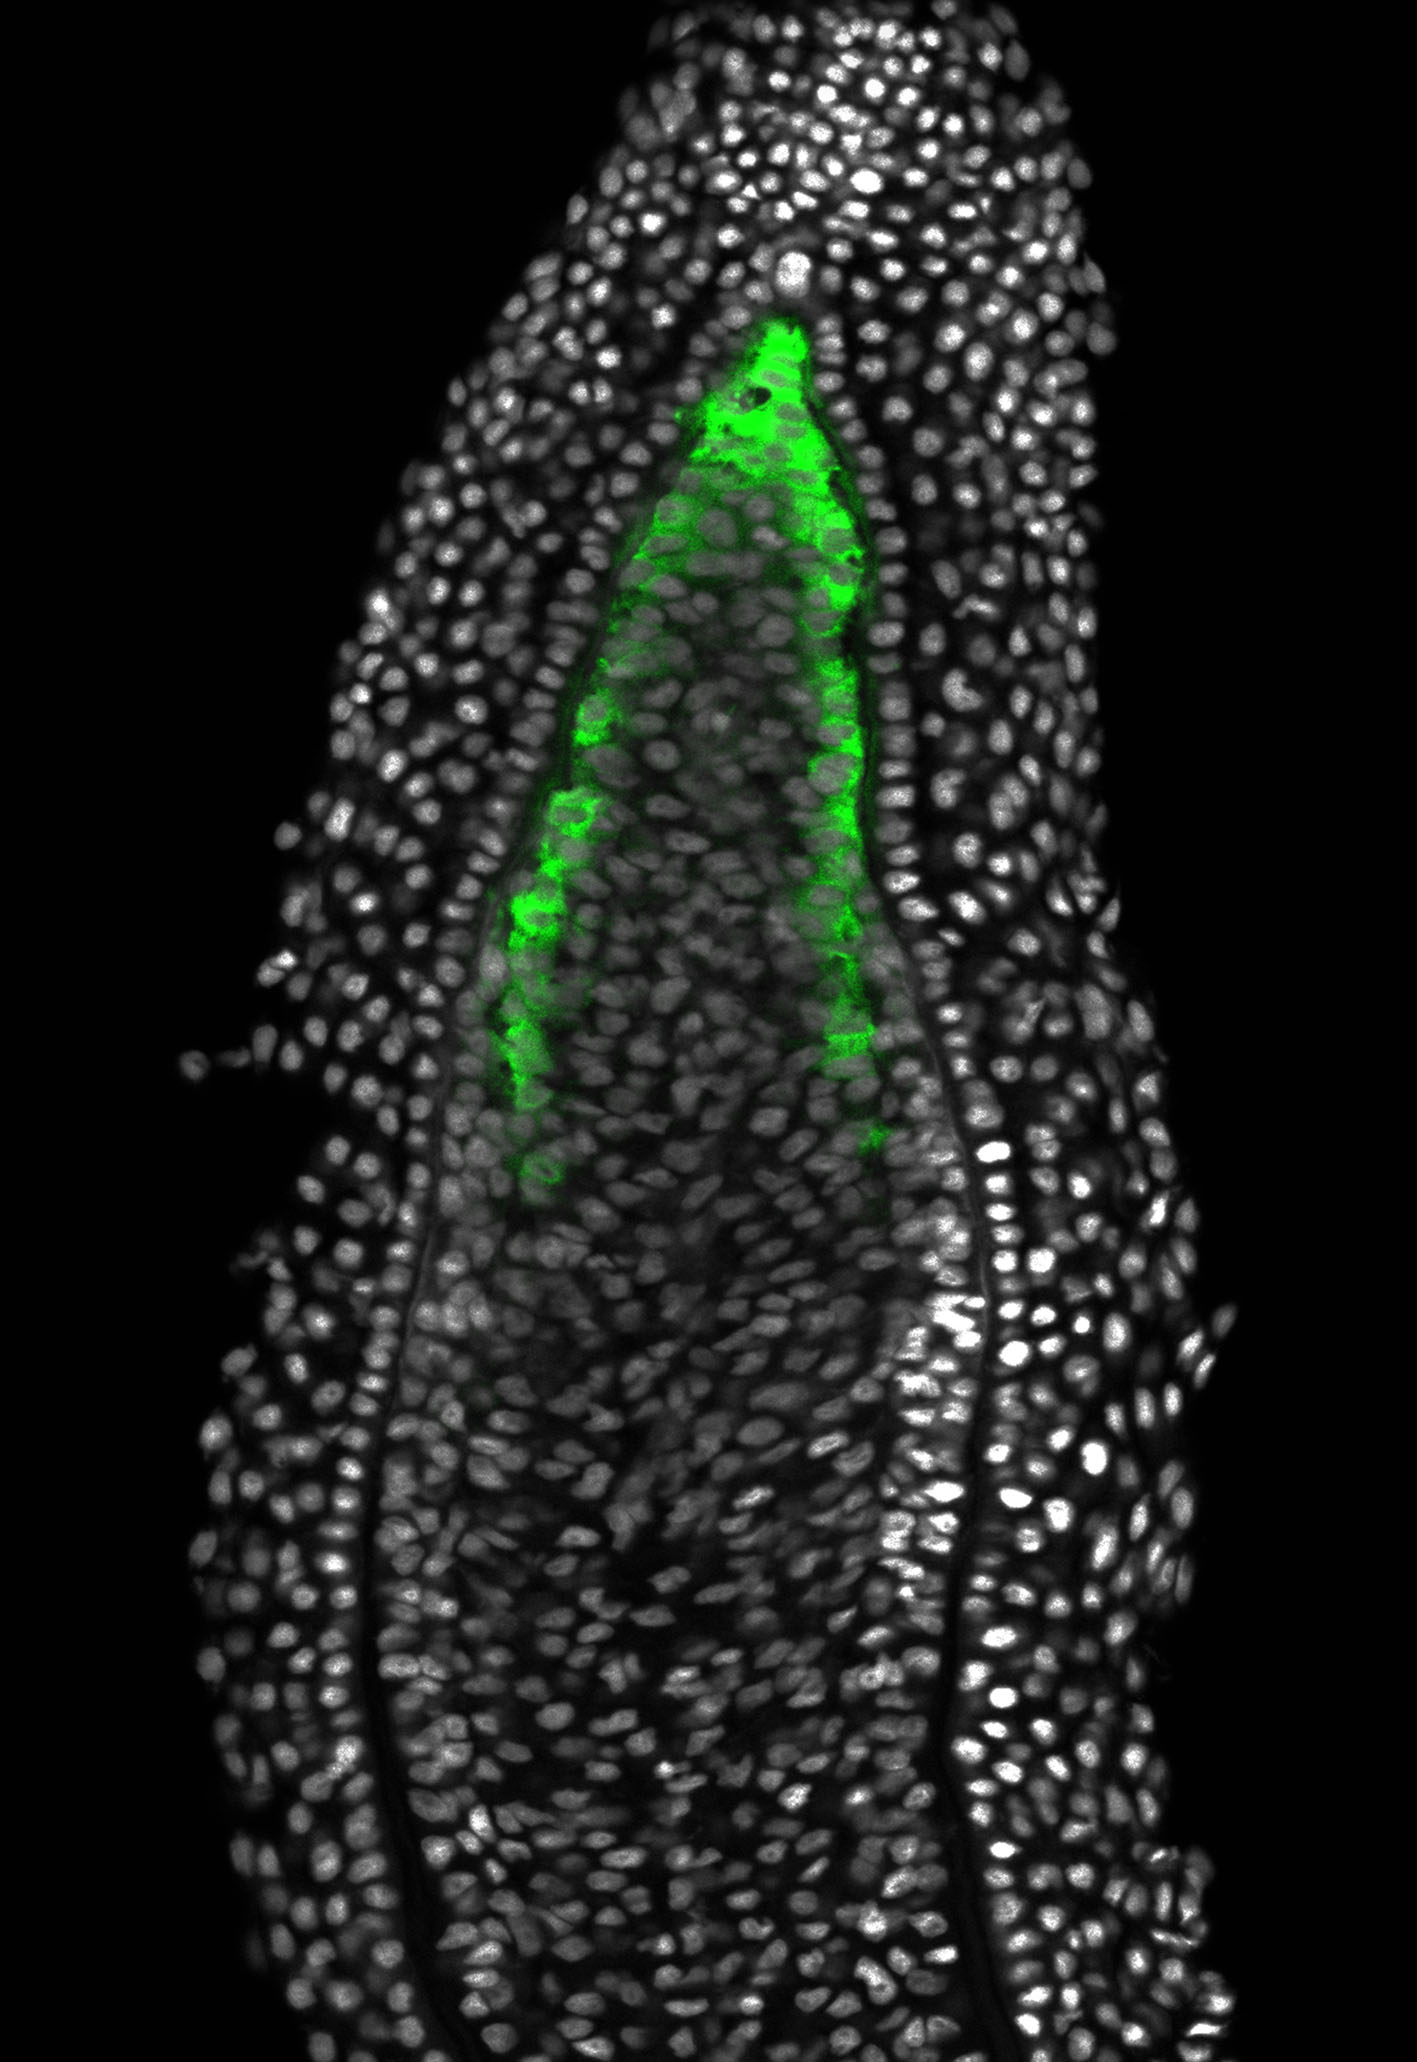 Fluoreszenzmikroskopische Aufnahme eines Blastems, grün leuchtend erkennt man aktivierte Wnt-Signale.